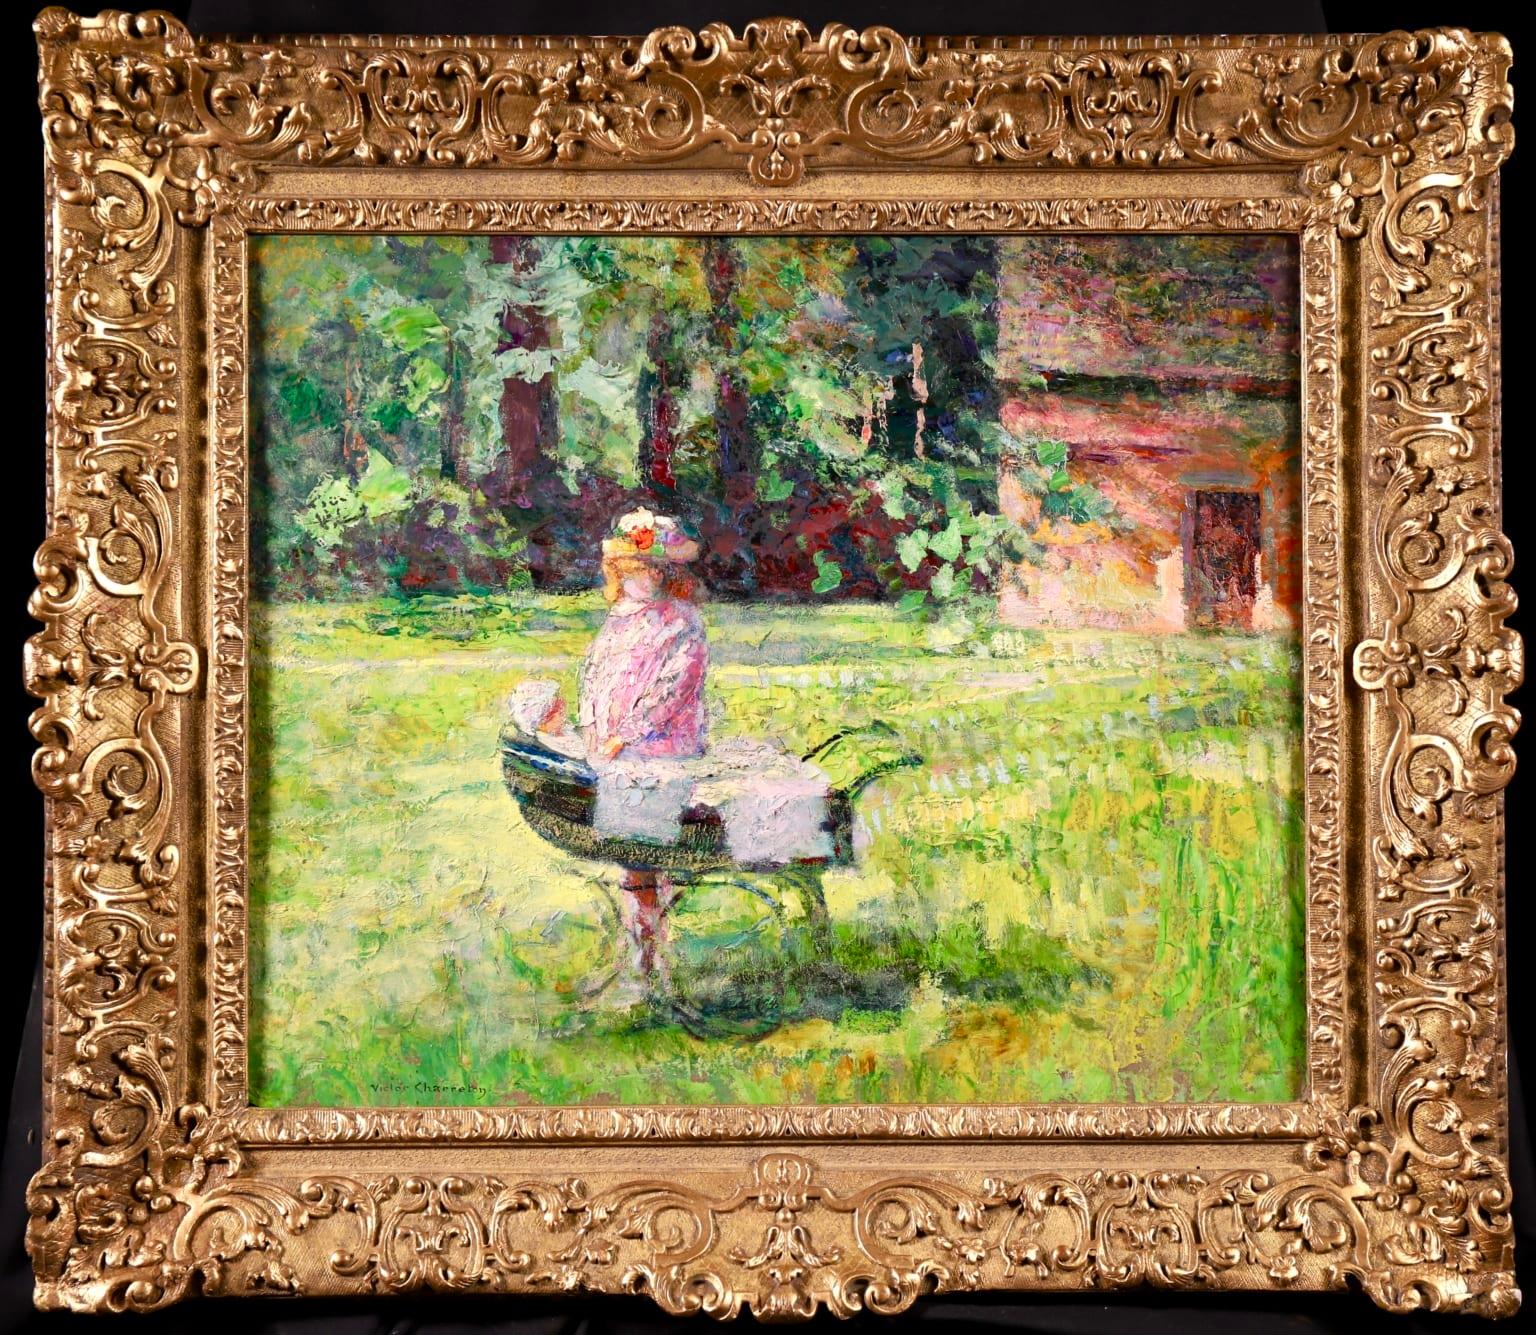 Signierte Figur in Landschaft Öl auf Karton circa 1910 von gesuchten Französisch post impressionistischen Maler Victor Charreton. Dieses bezaubernde Stück zeigt ein junges Mädchen in einem rosa Kleid und Hut, das mit einer Puppe in einem Kinderwagen